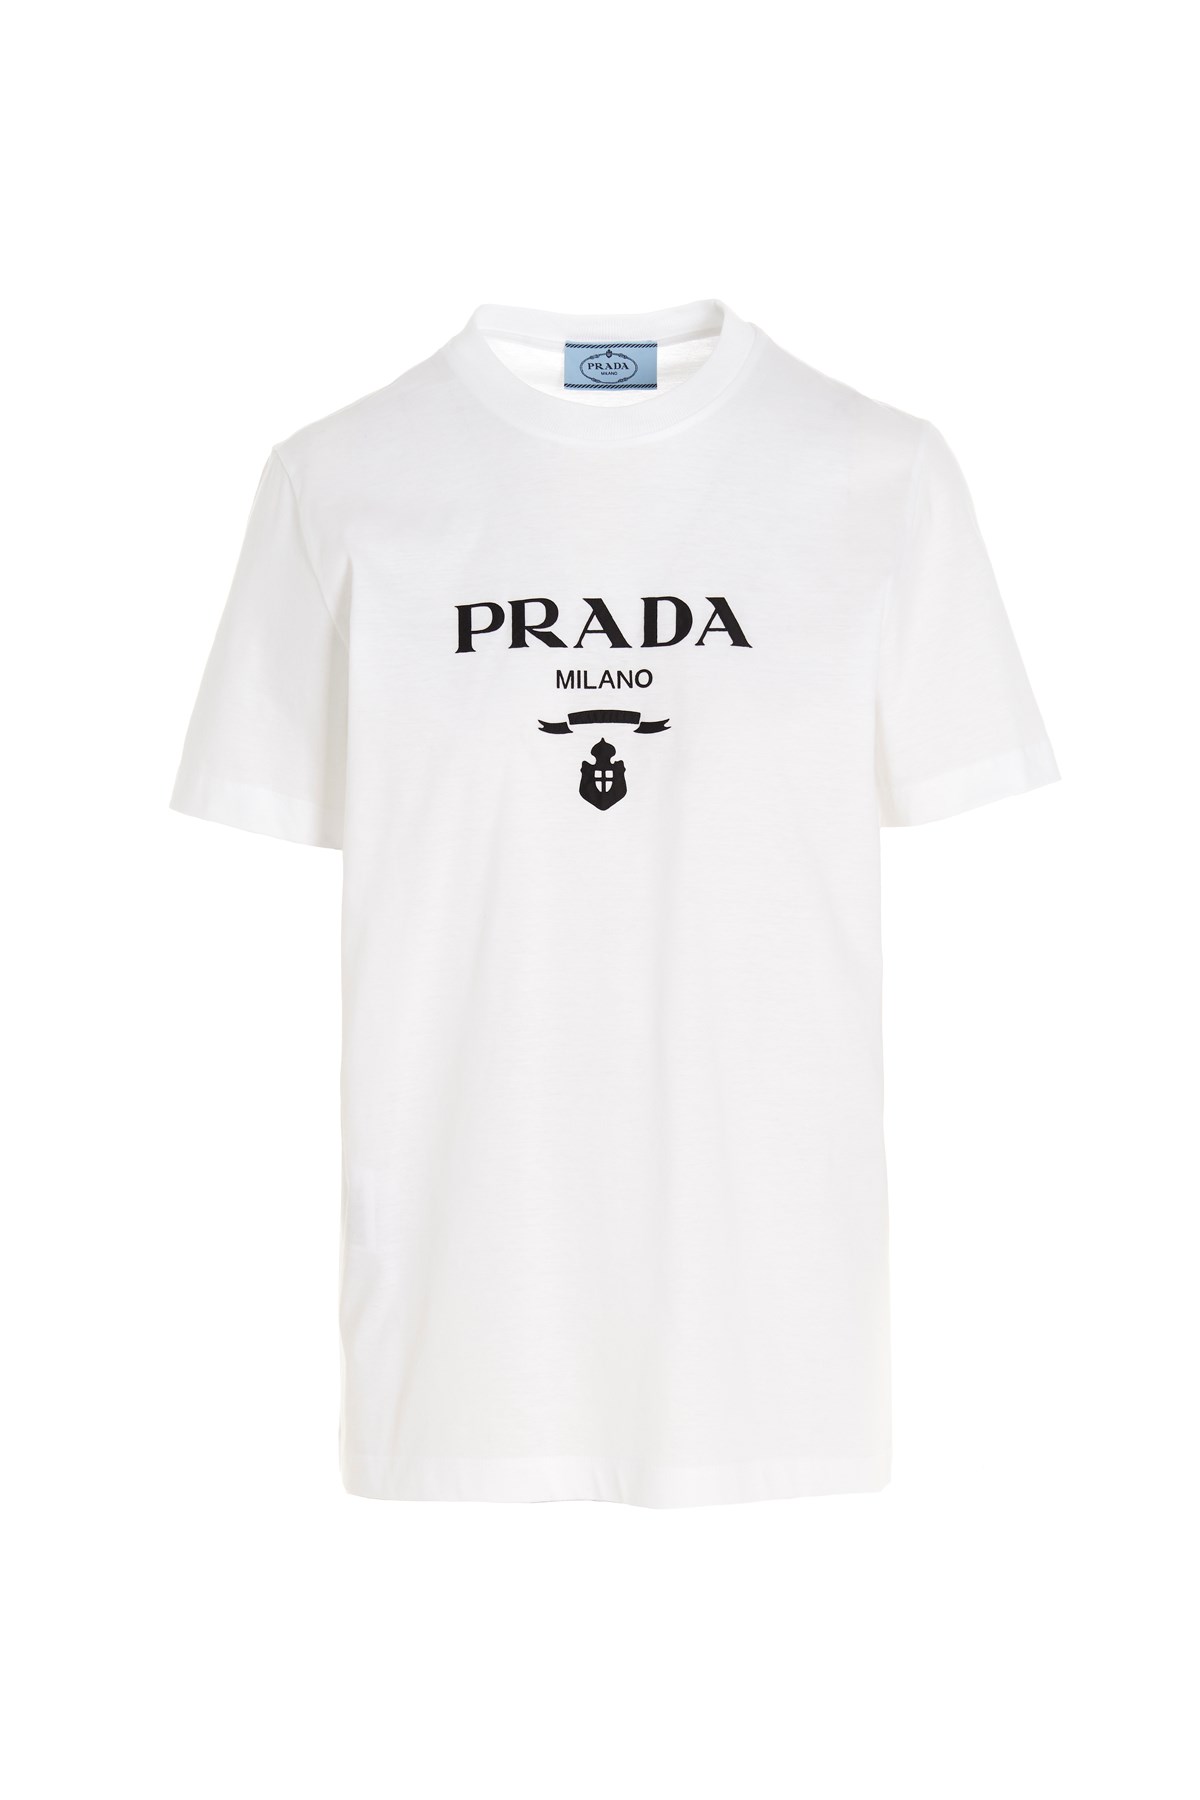 PRADA T-Shirt Mit Logo